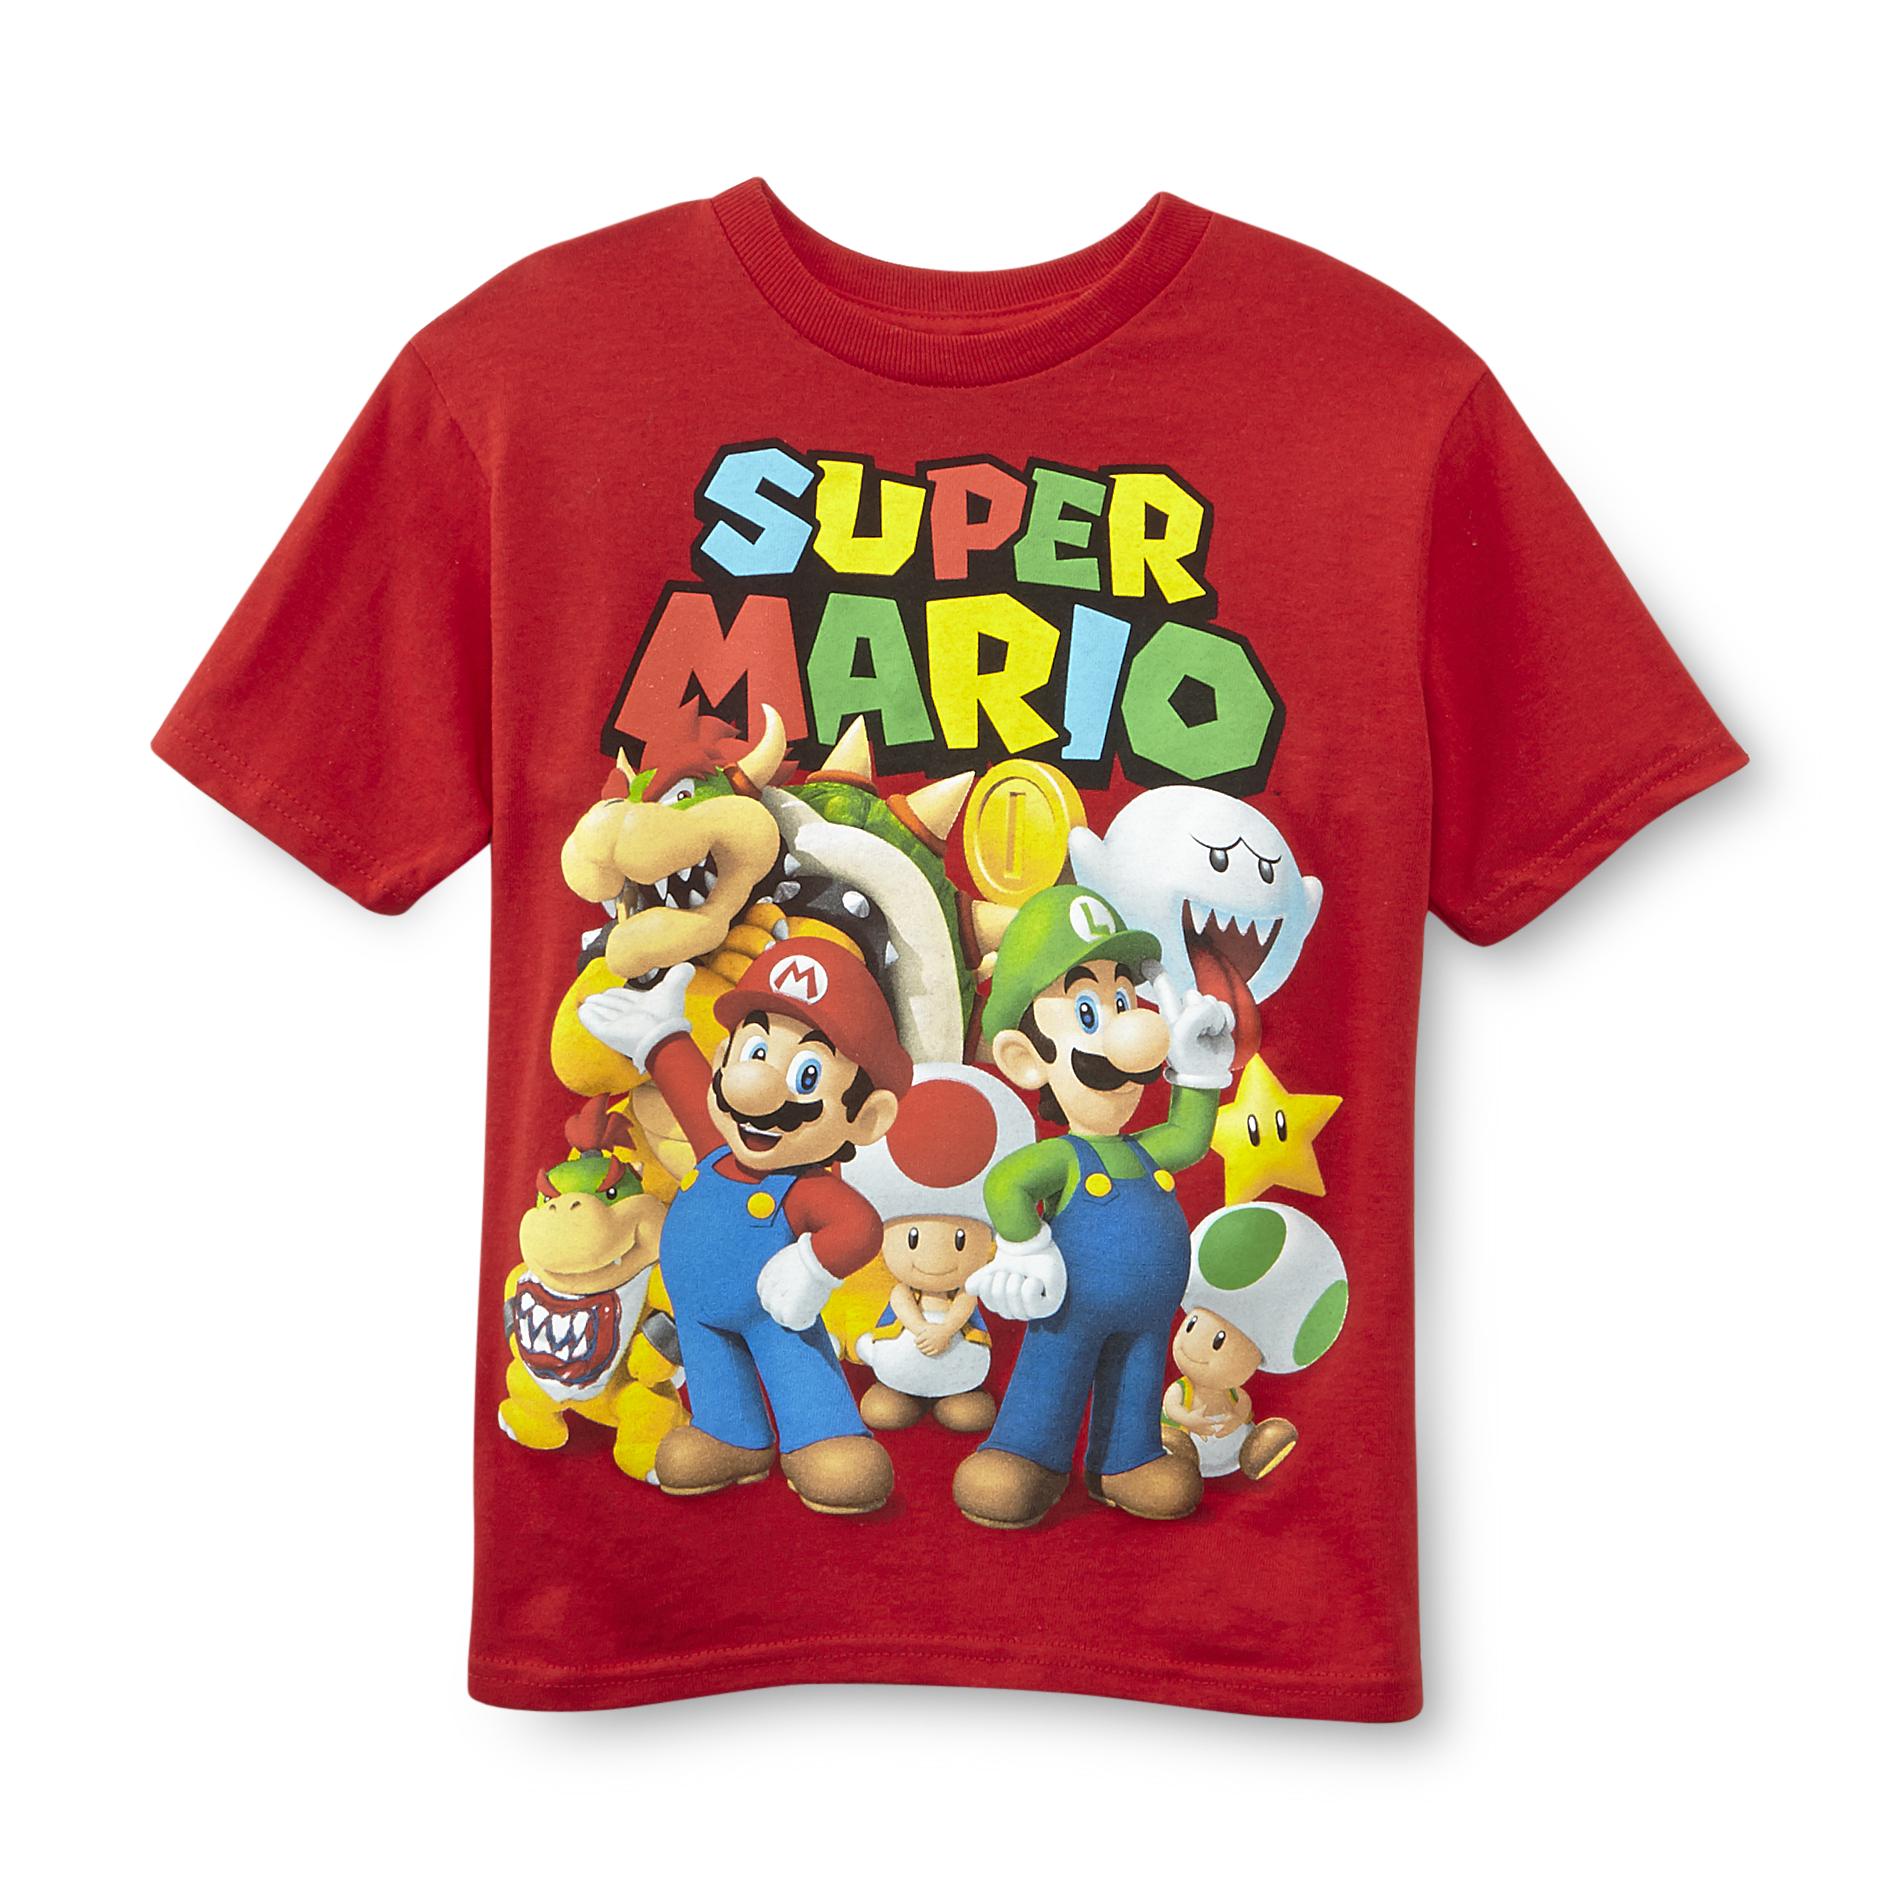 Nintendo Super Mario Bros. Boy's Graphic T-Shirt - Super Mario